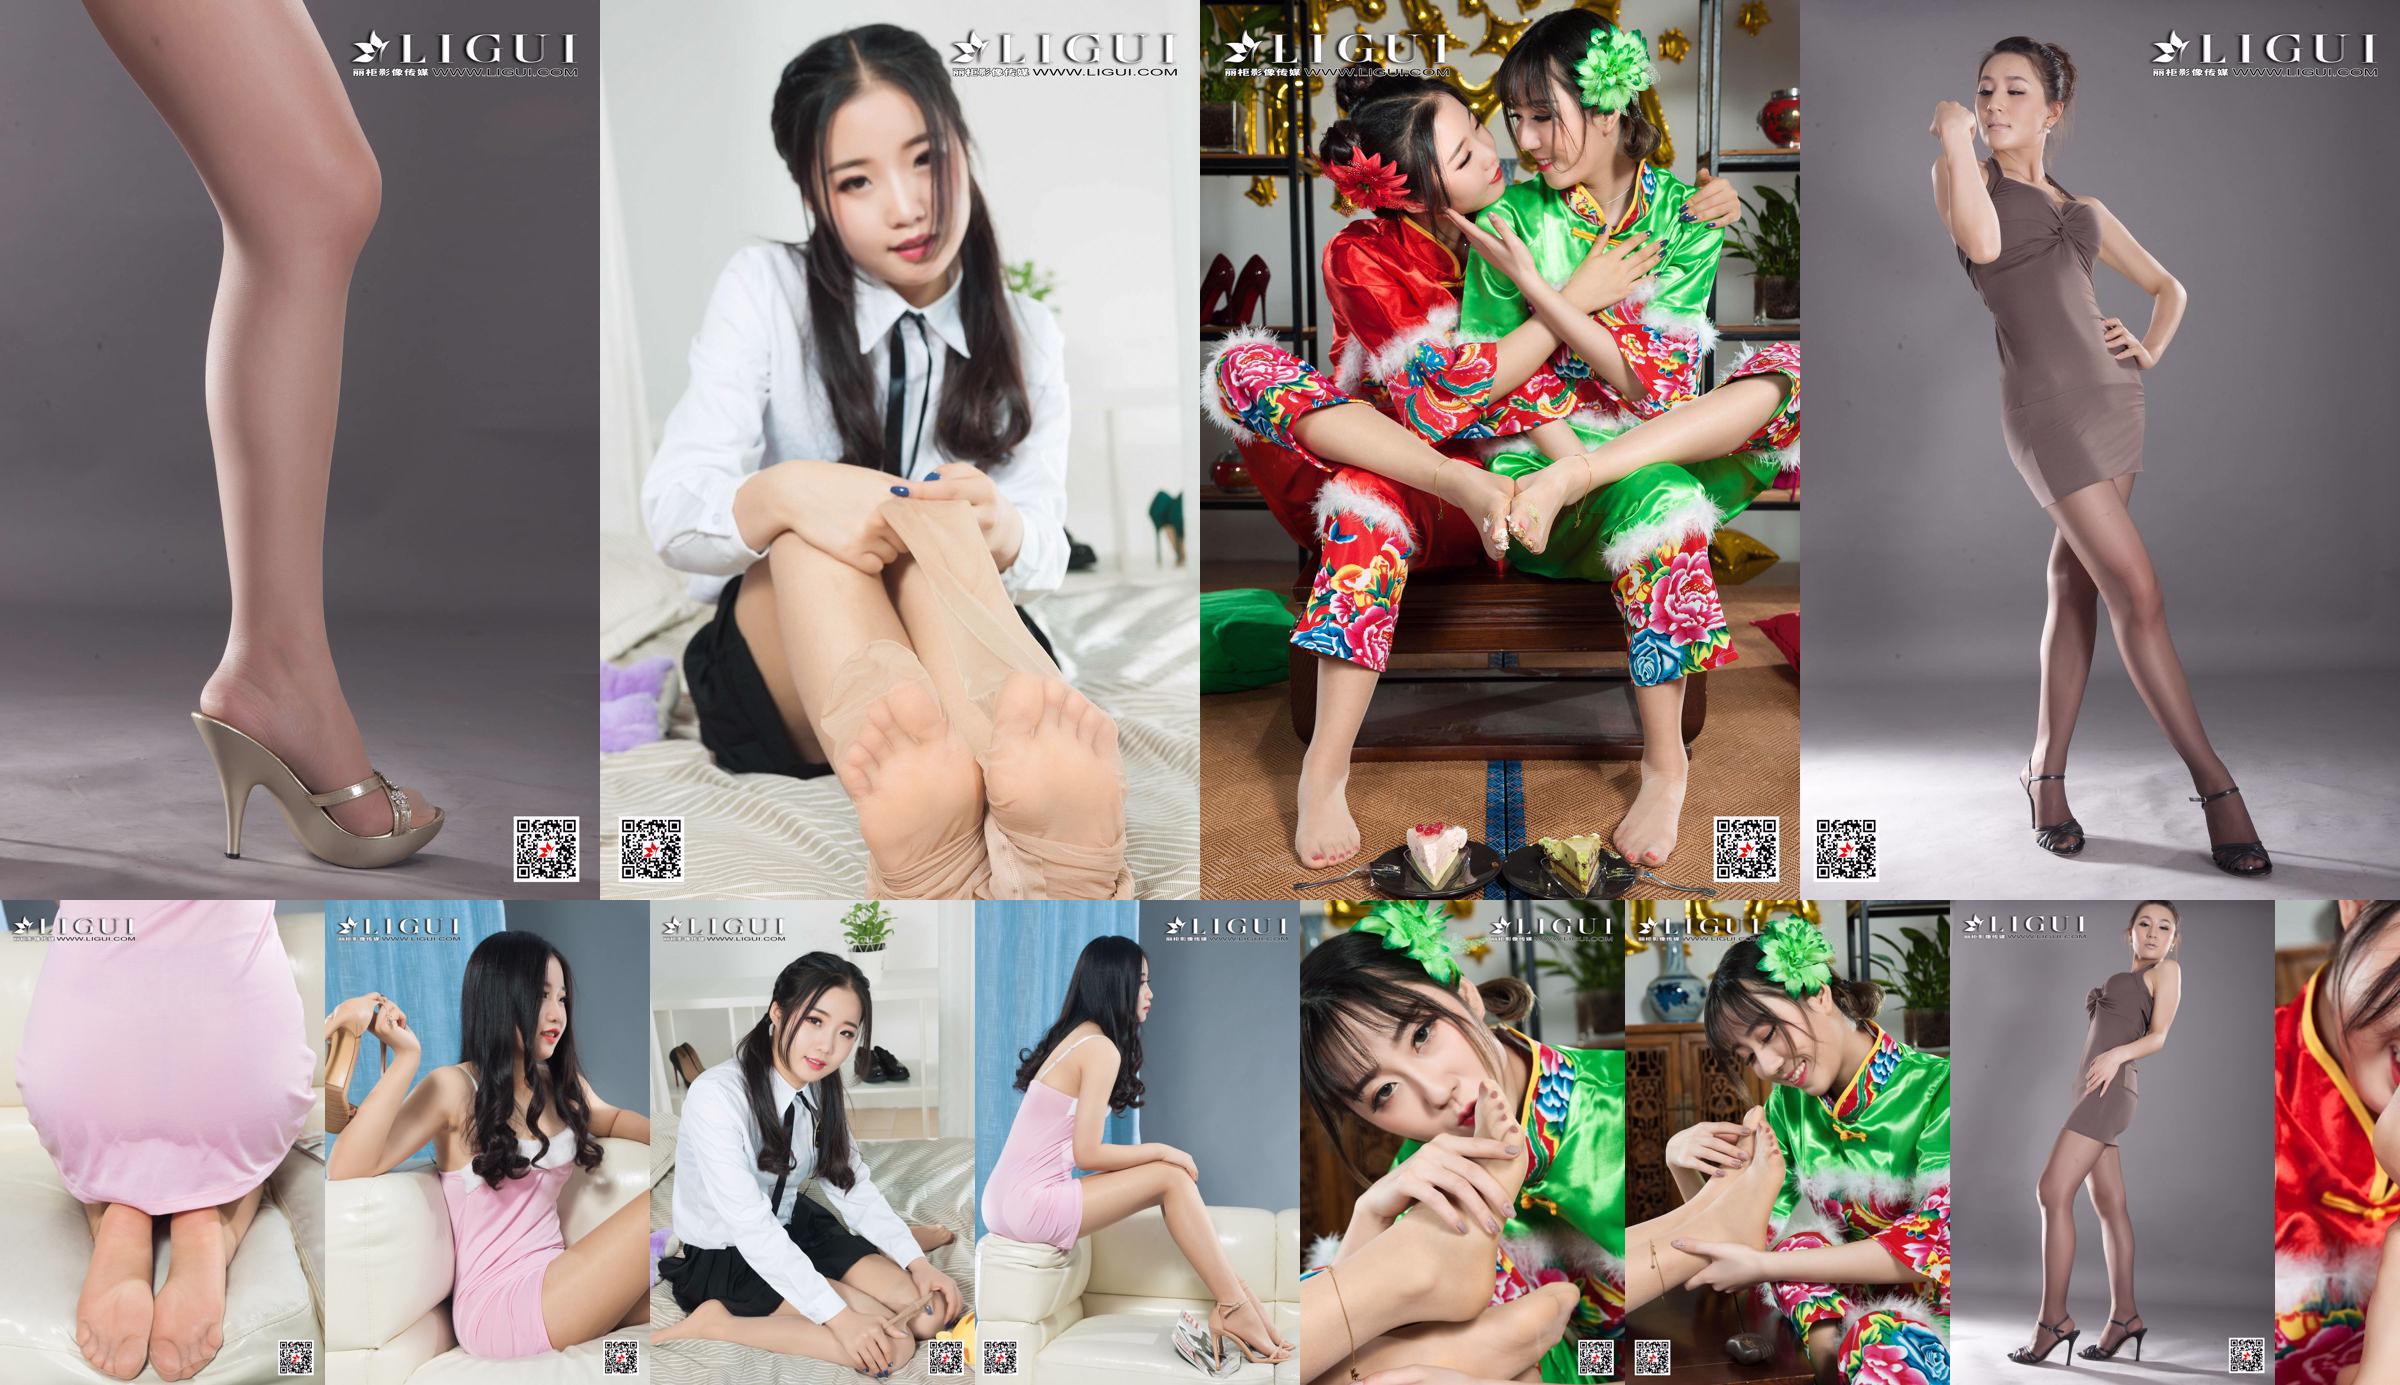 [丽 柜 Ligui] Model Yuanyuan "Studio Shot Beauty" No.791268 Seite 1